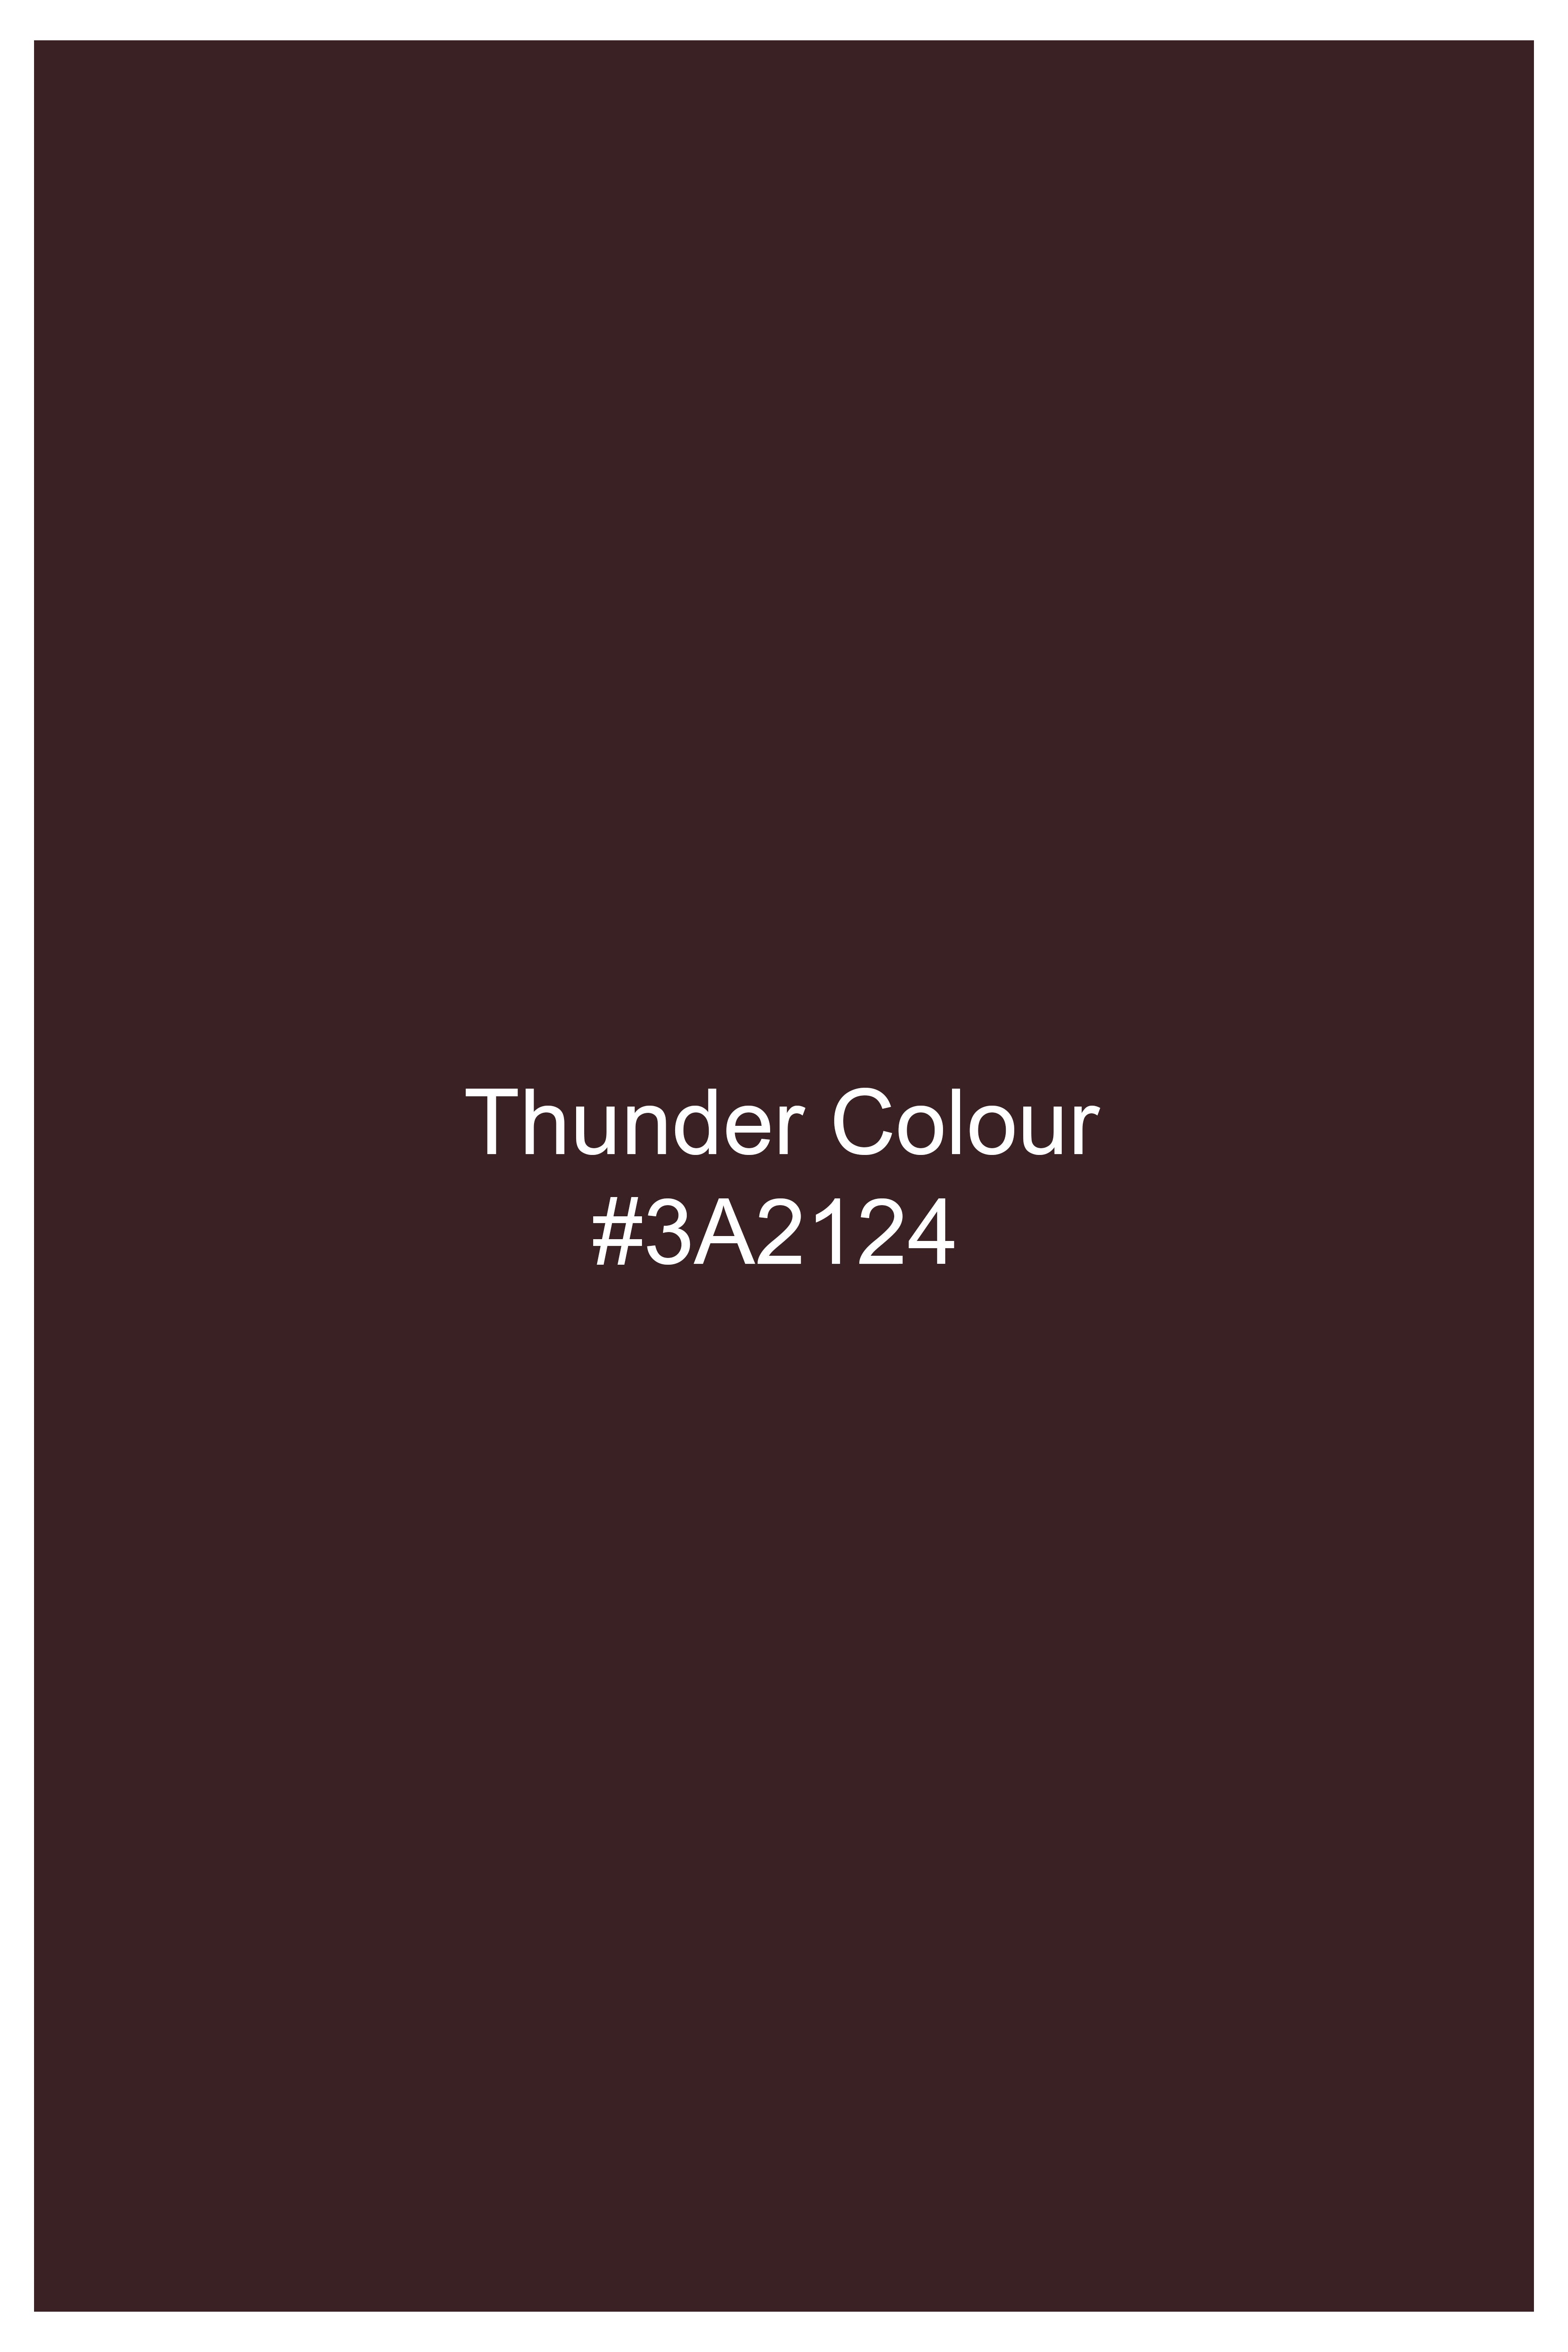 Thunder Brown Wool Rich Waistcoat V2750-36, V2750-38, V2750-40, V2750-42, V2750-44, V2750-46, V2750-48, V2750-50, V2750-52, V2750-54, V2750-56, V2750-58, V2750-60